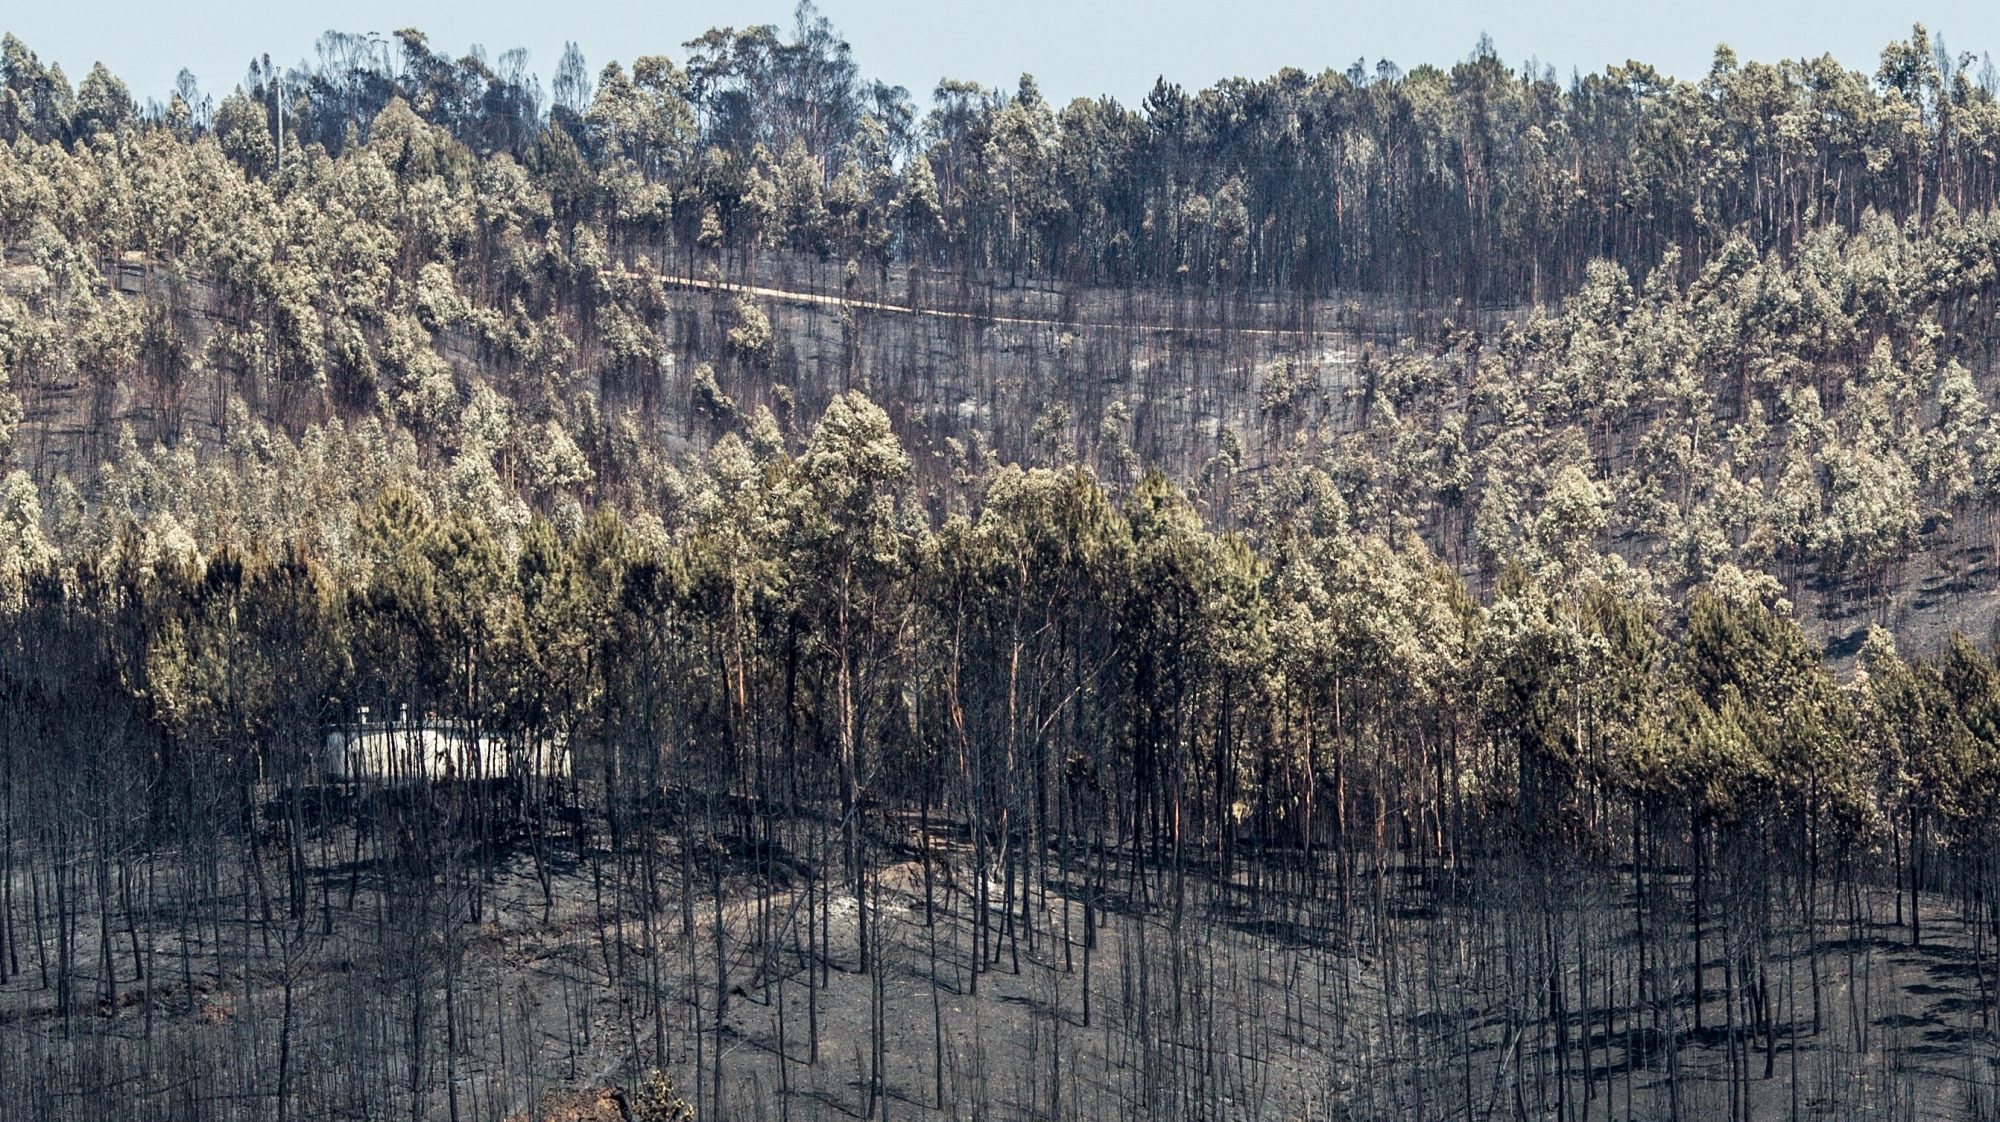 O incêndio que deflagrou em 17 de junho de 2017 em Escalos Fundeiros, no concelho de Pedrógão Grande, provocou 66 mortos e 253 feridos